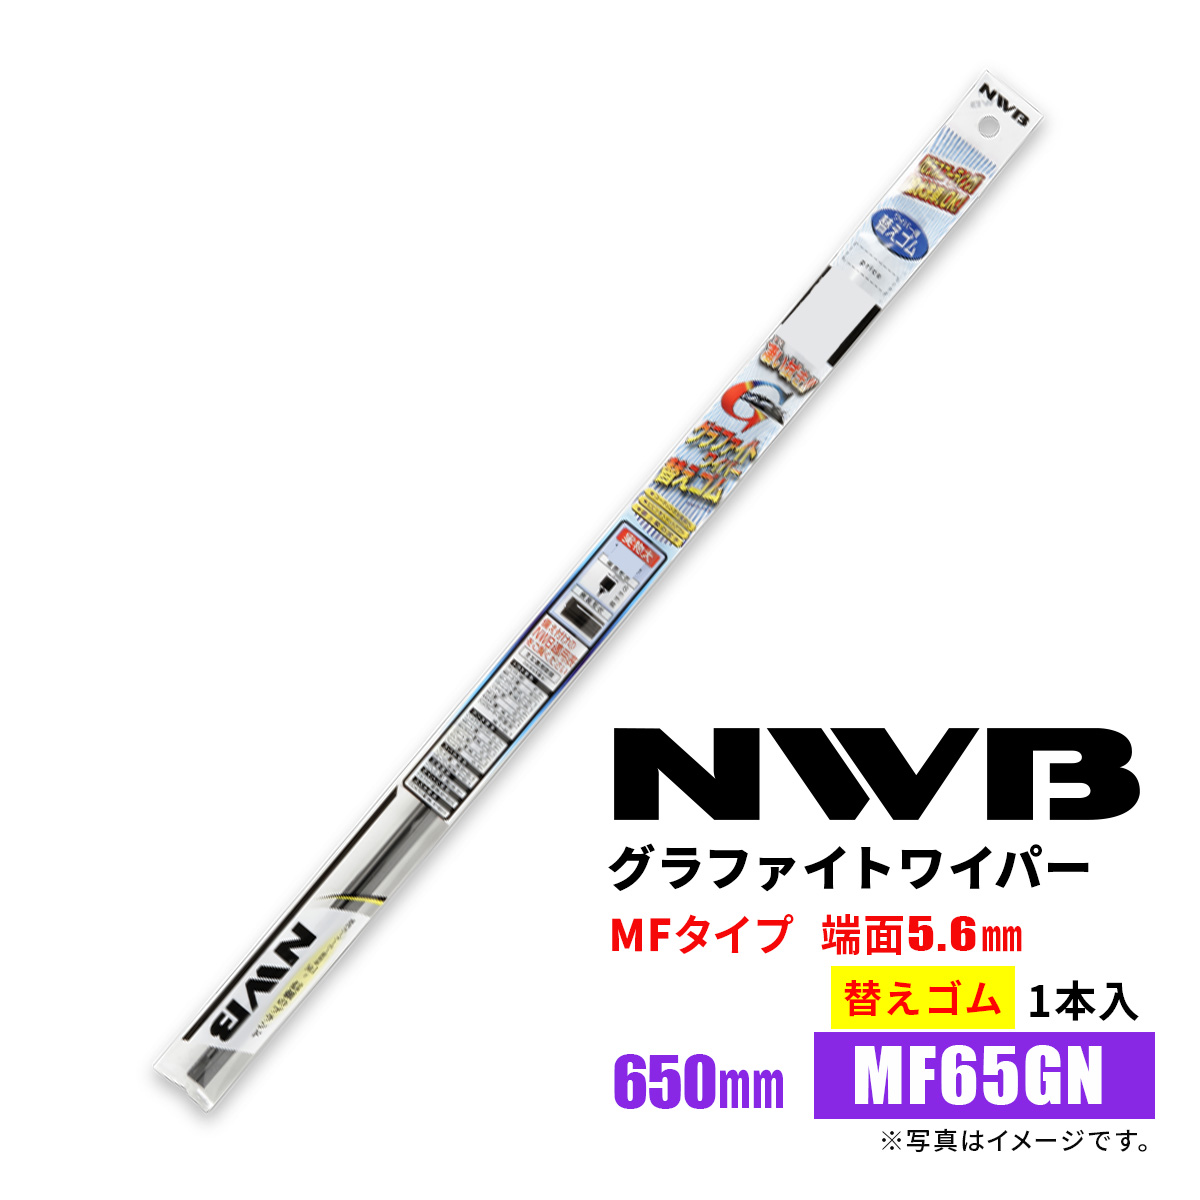 NWB グラファイトワイパー 替えゴム MF65GN 650mm 1本入 雨用ワイパー MFタイプ 端面5.6mm